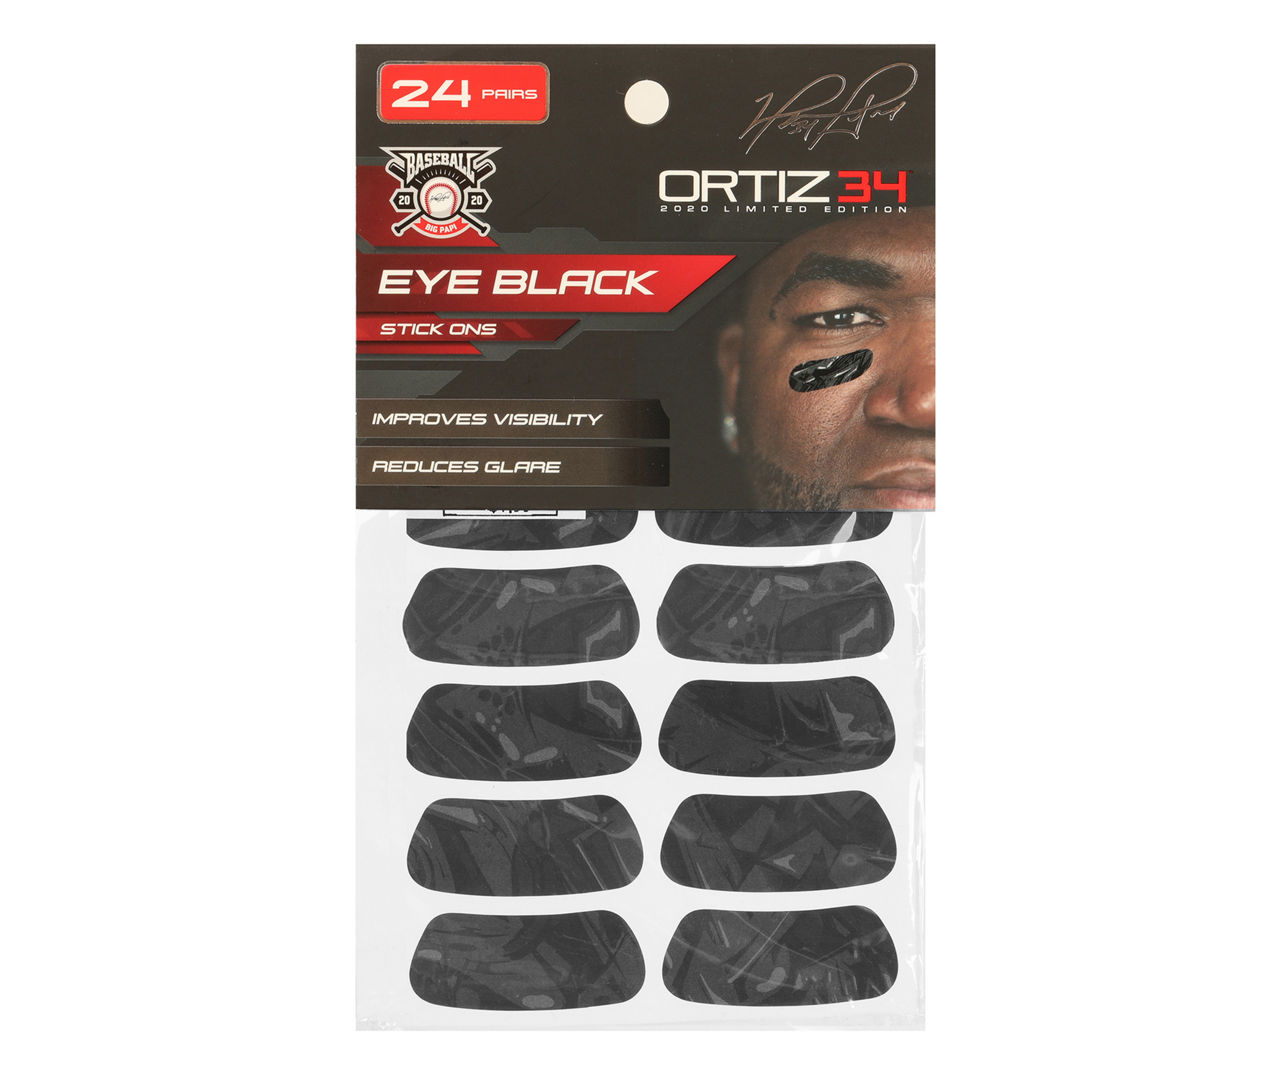  2Pcs Eye Black Stick Baseball, Eye Black Stick, Eye